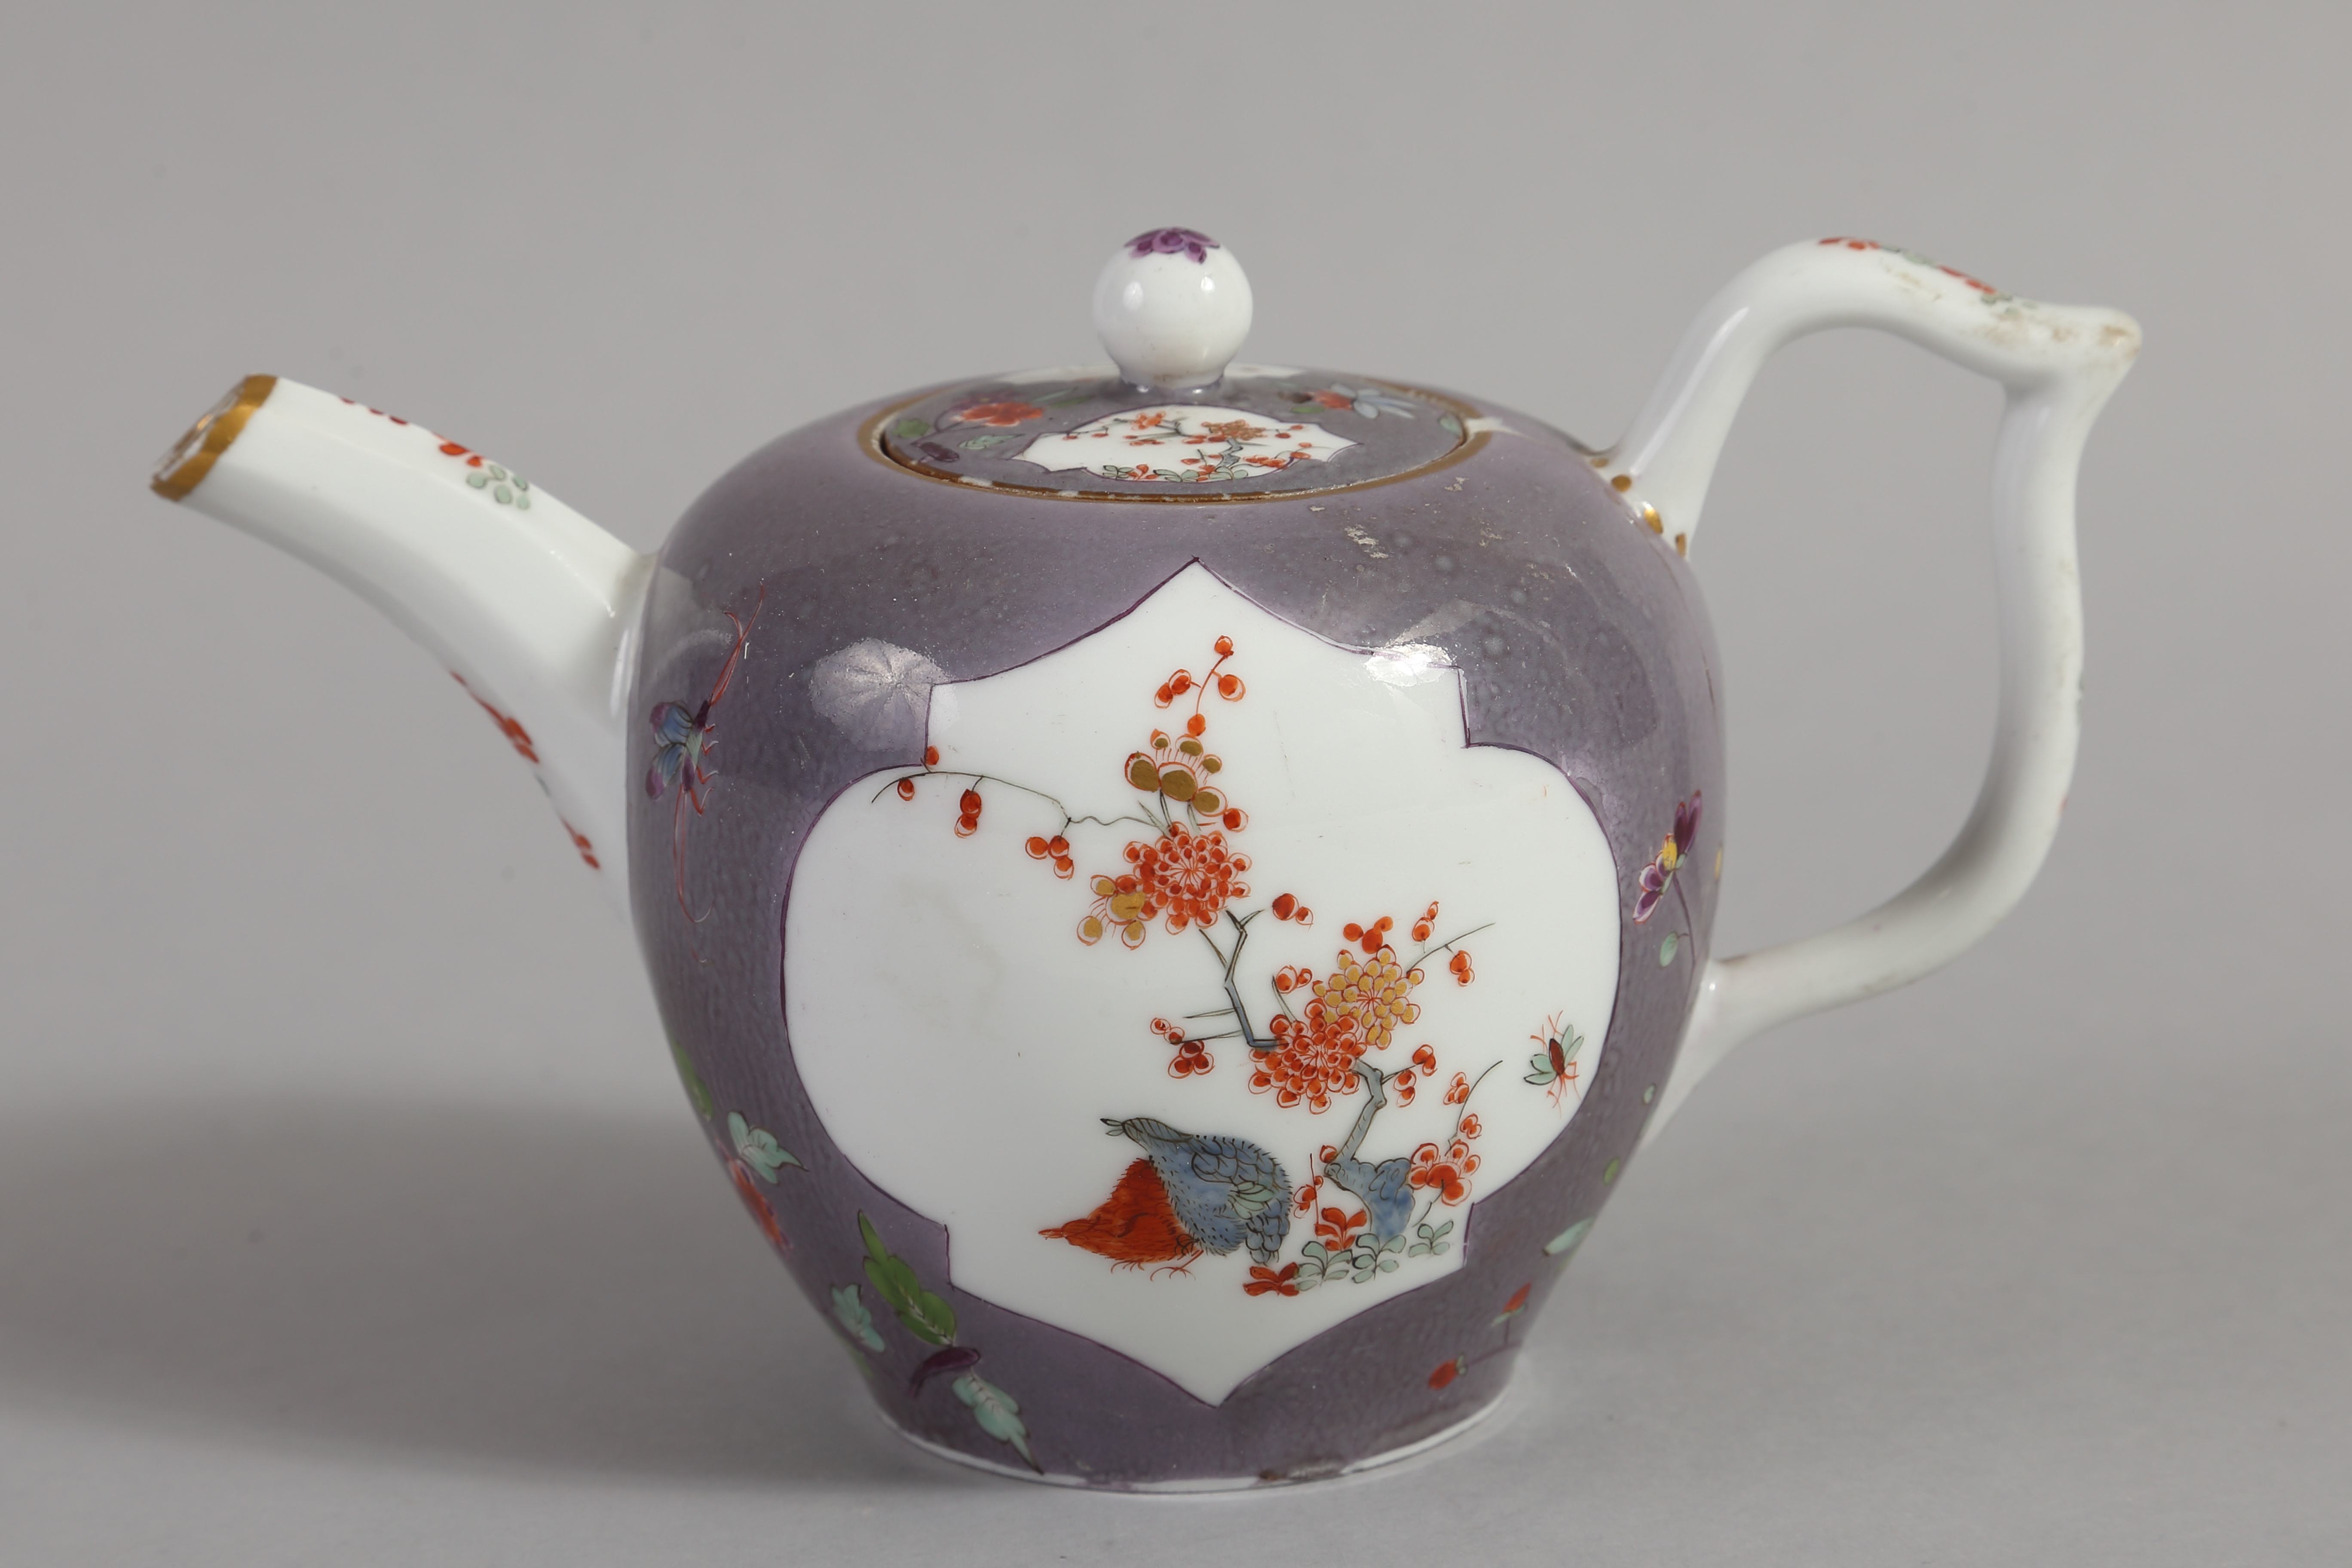 Предметы из чайно-кофейного сервиза с сиреневато-серым крытьём и росписью в стиле какиэмон. Мейсенская фарфоровая мануфактура. 1730-е годы.